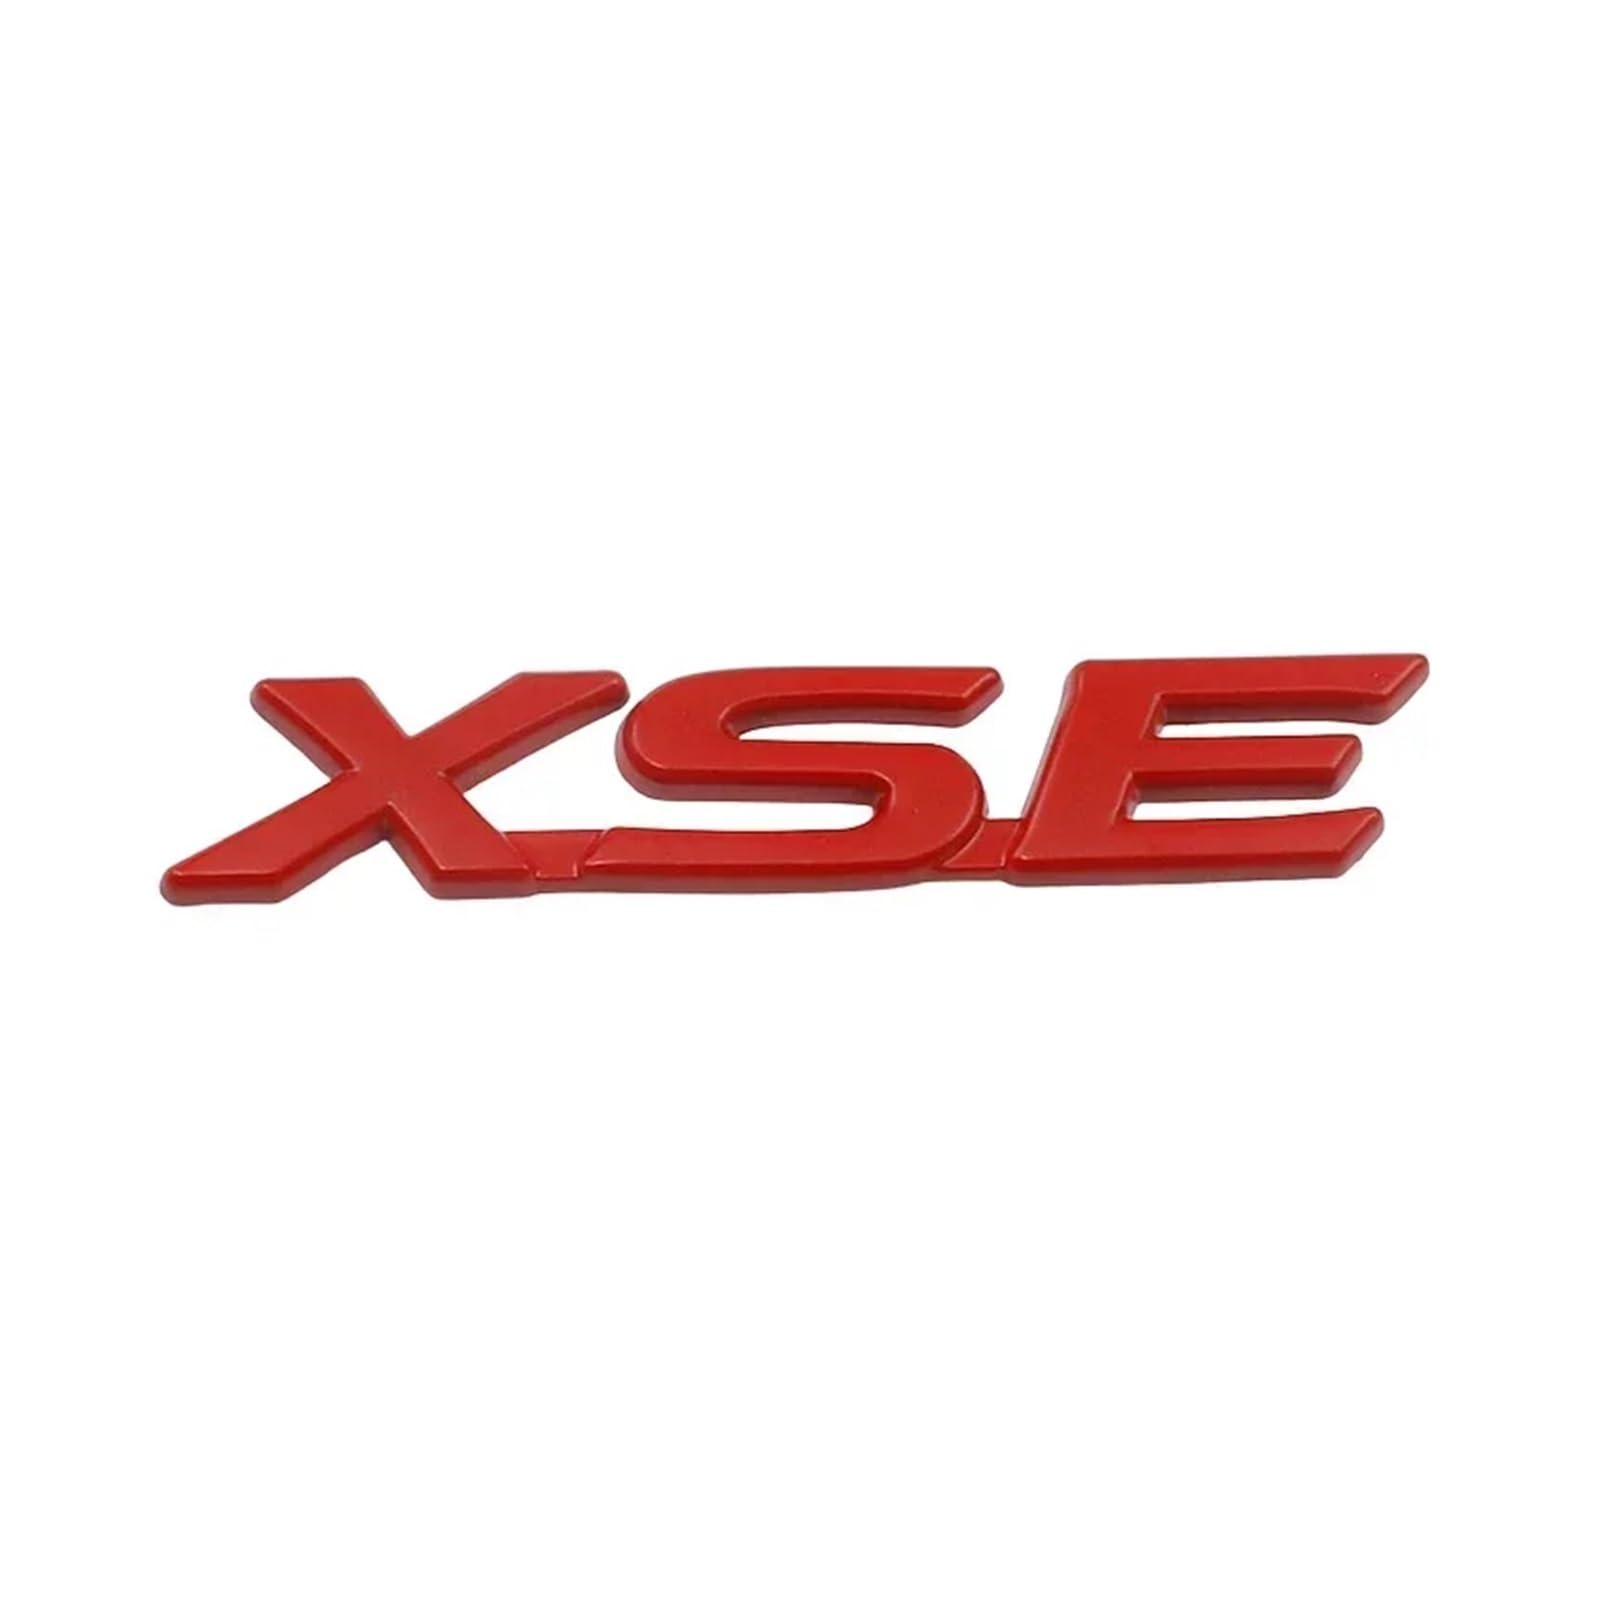 AQXYWQOL 3D Metall SE XSE Logo Hinten Stamm Emblem Abzeichen Aufkleber Aufkleber Kompatibel mit Camry Sienna Highlander Corolla Auto Styling Zubehör Farbe ist konstant, verblasst nicht und beschädigt( von AQXYWQOL